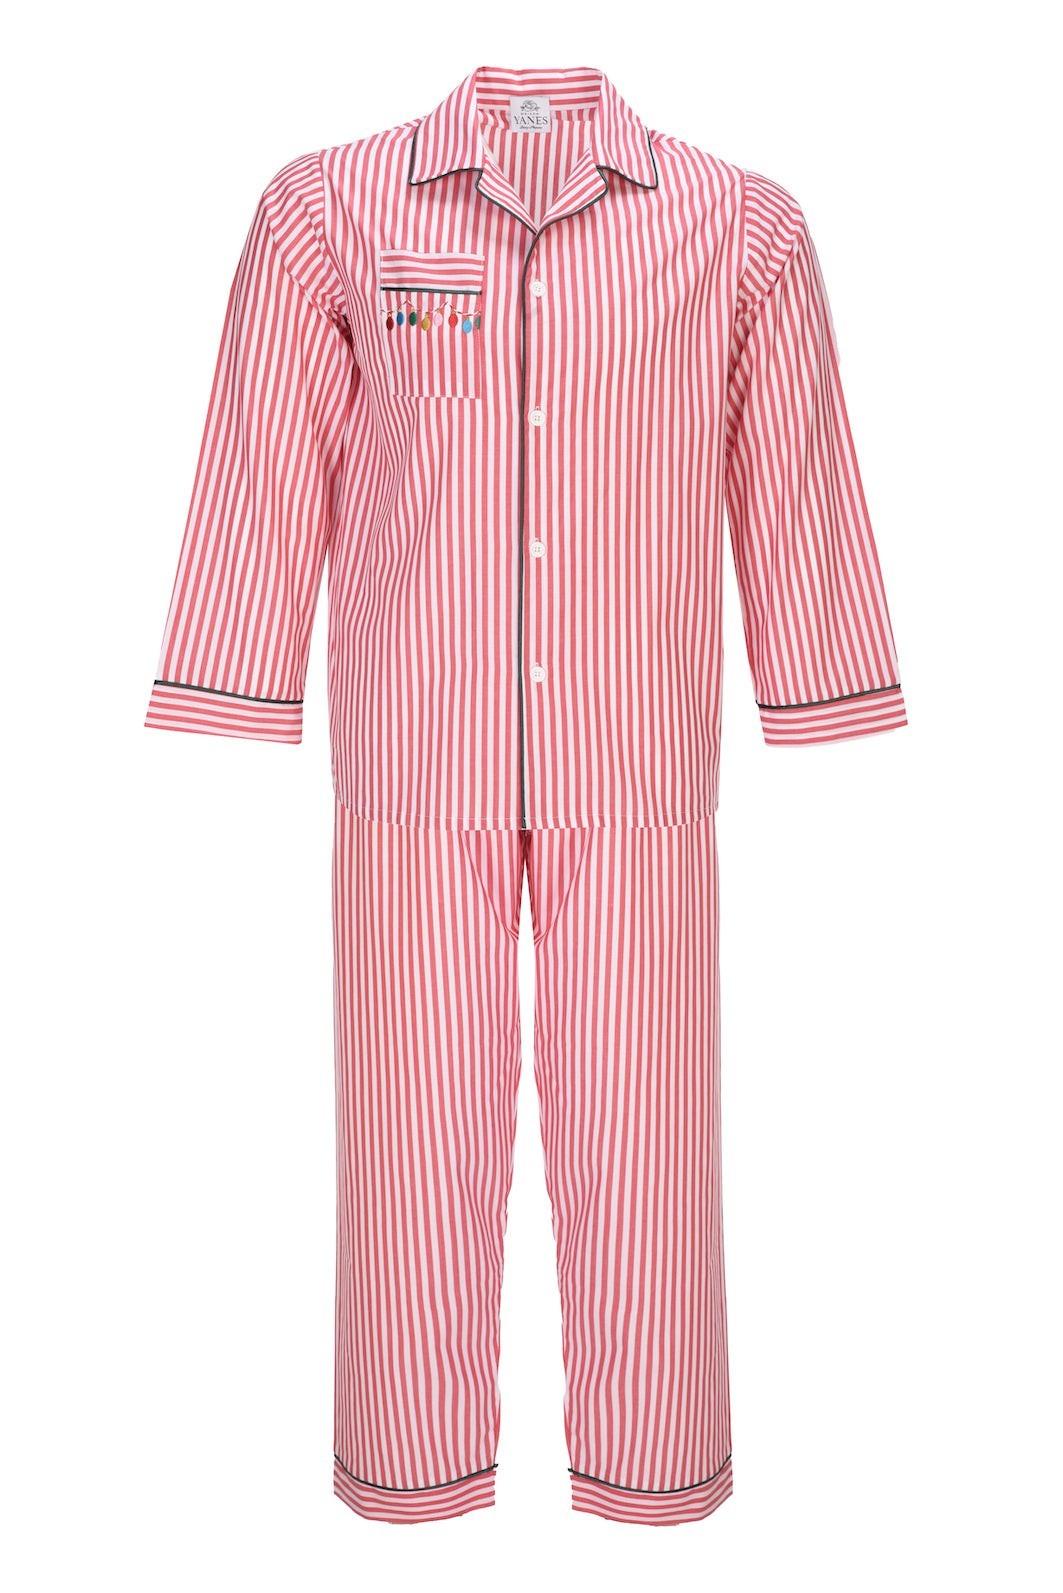 Red Striped Men's Pajamas Set